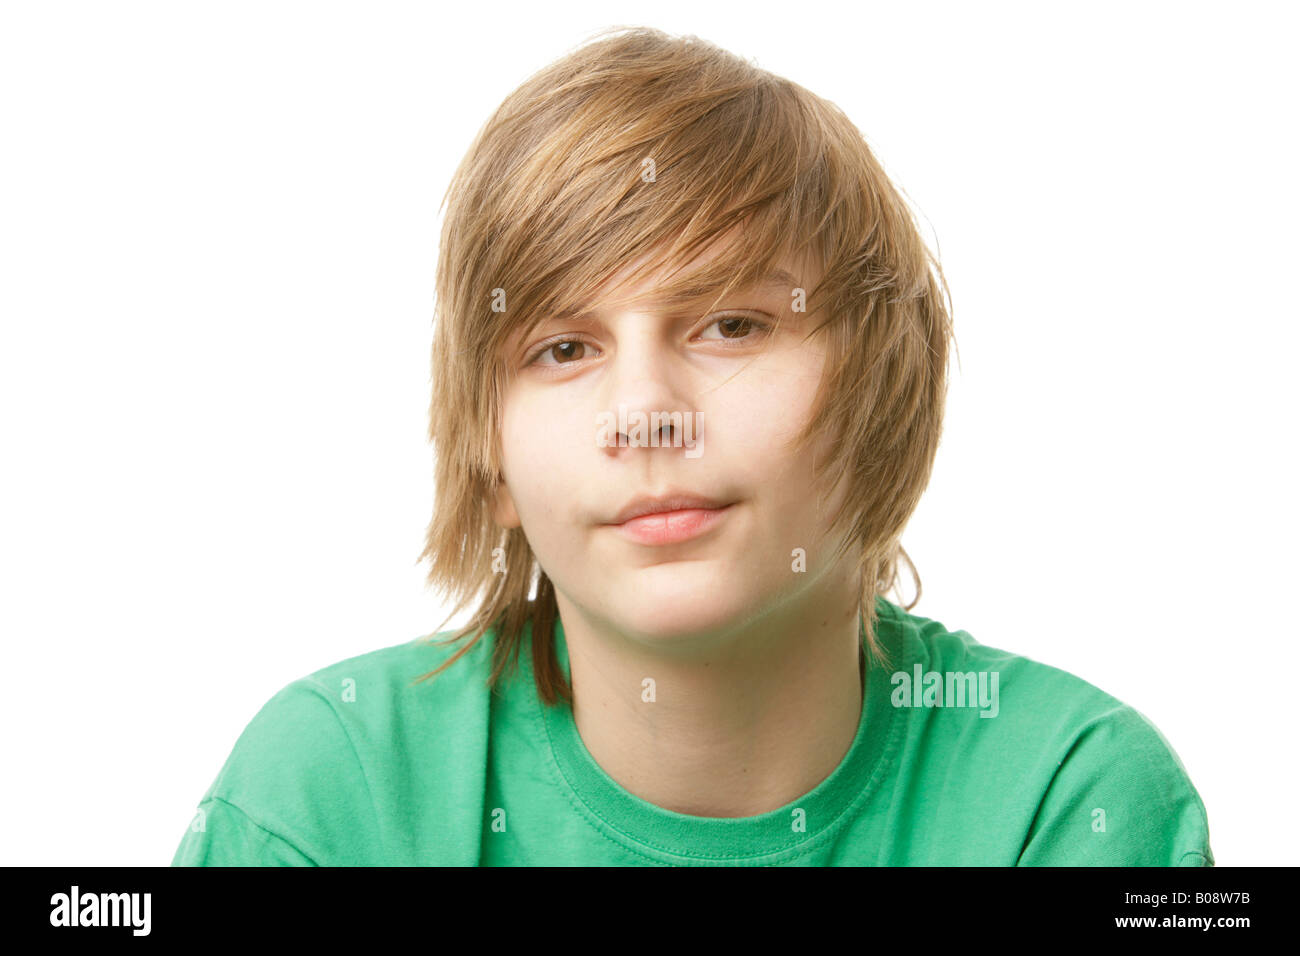 13-jähriger Junge mit einem grünen t-shirt Stockfoto